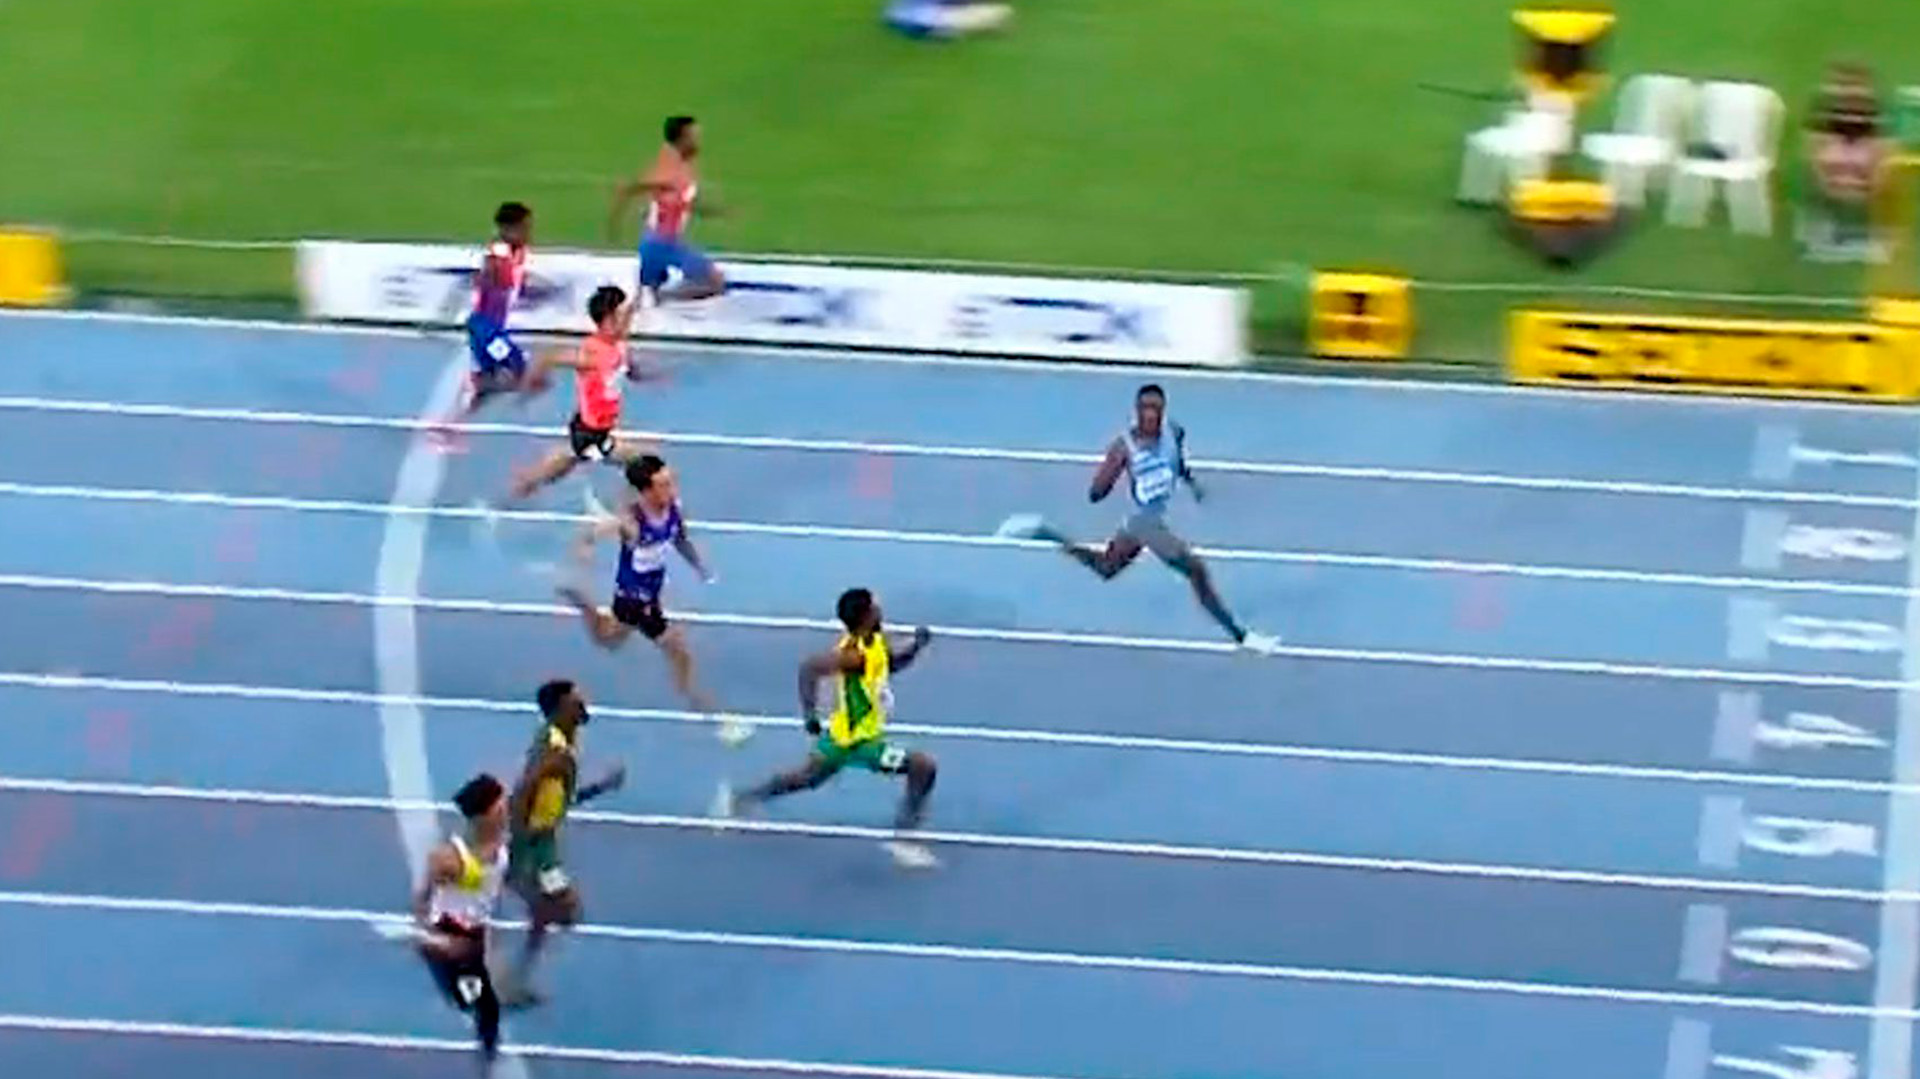 El “nuevo Usain Bolt” rompió el récord juvenil de los 100 metros y desafió a su rival antes de la meta